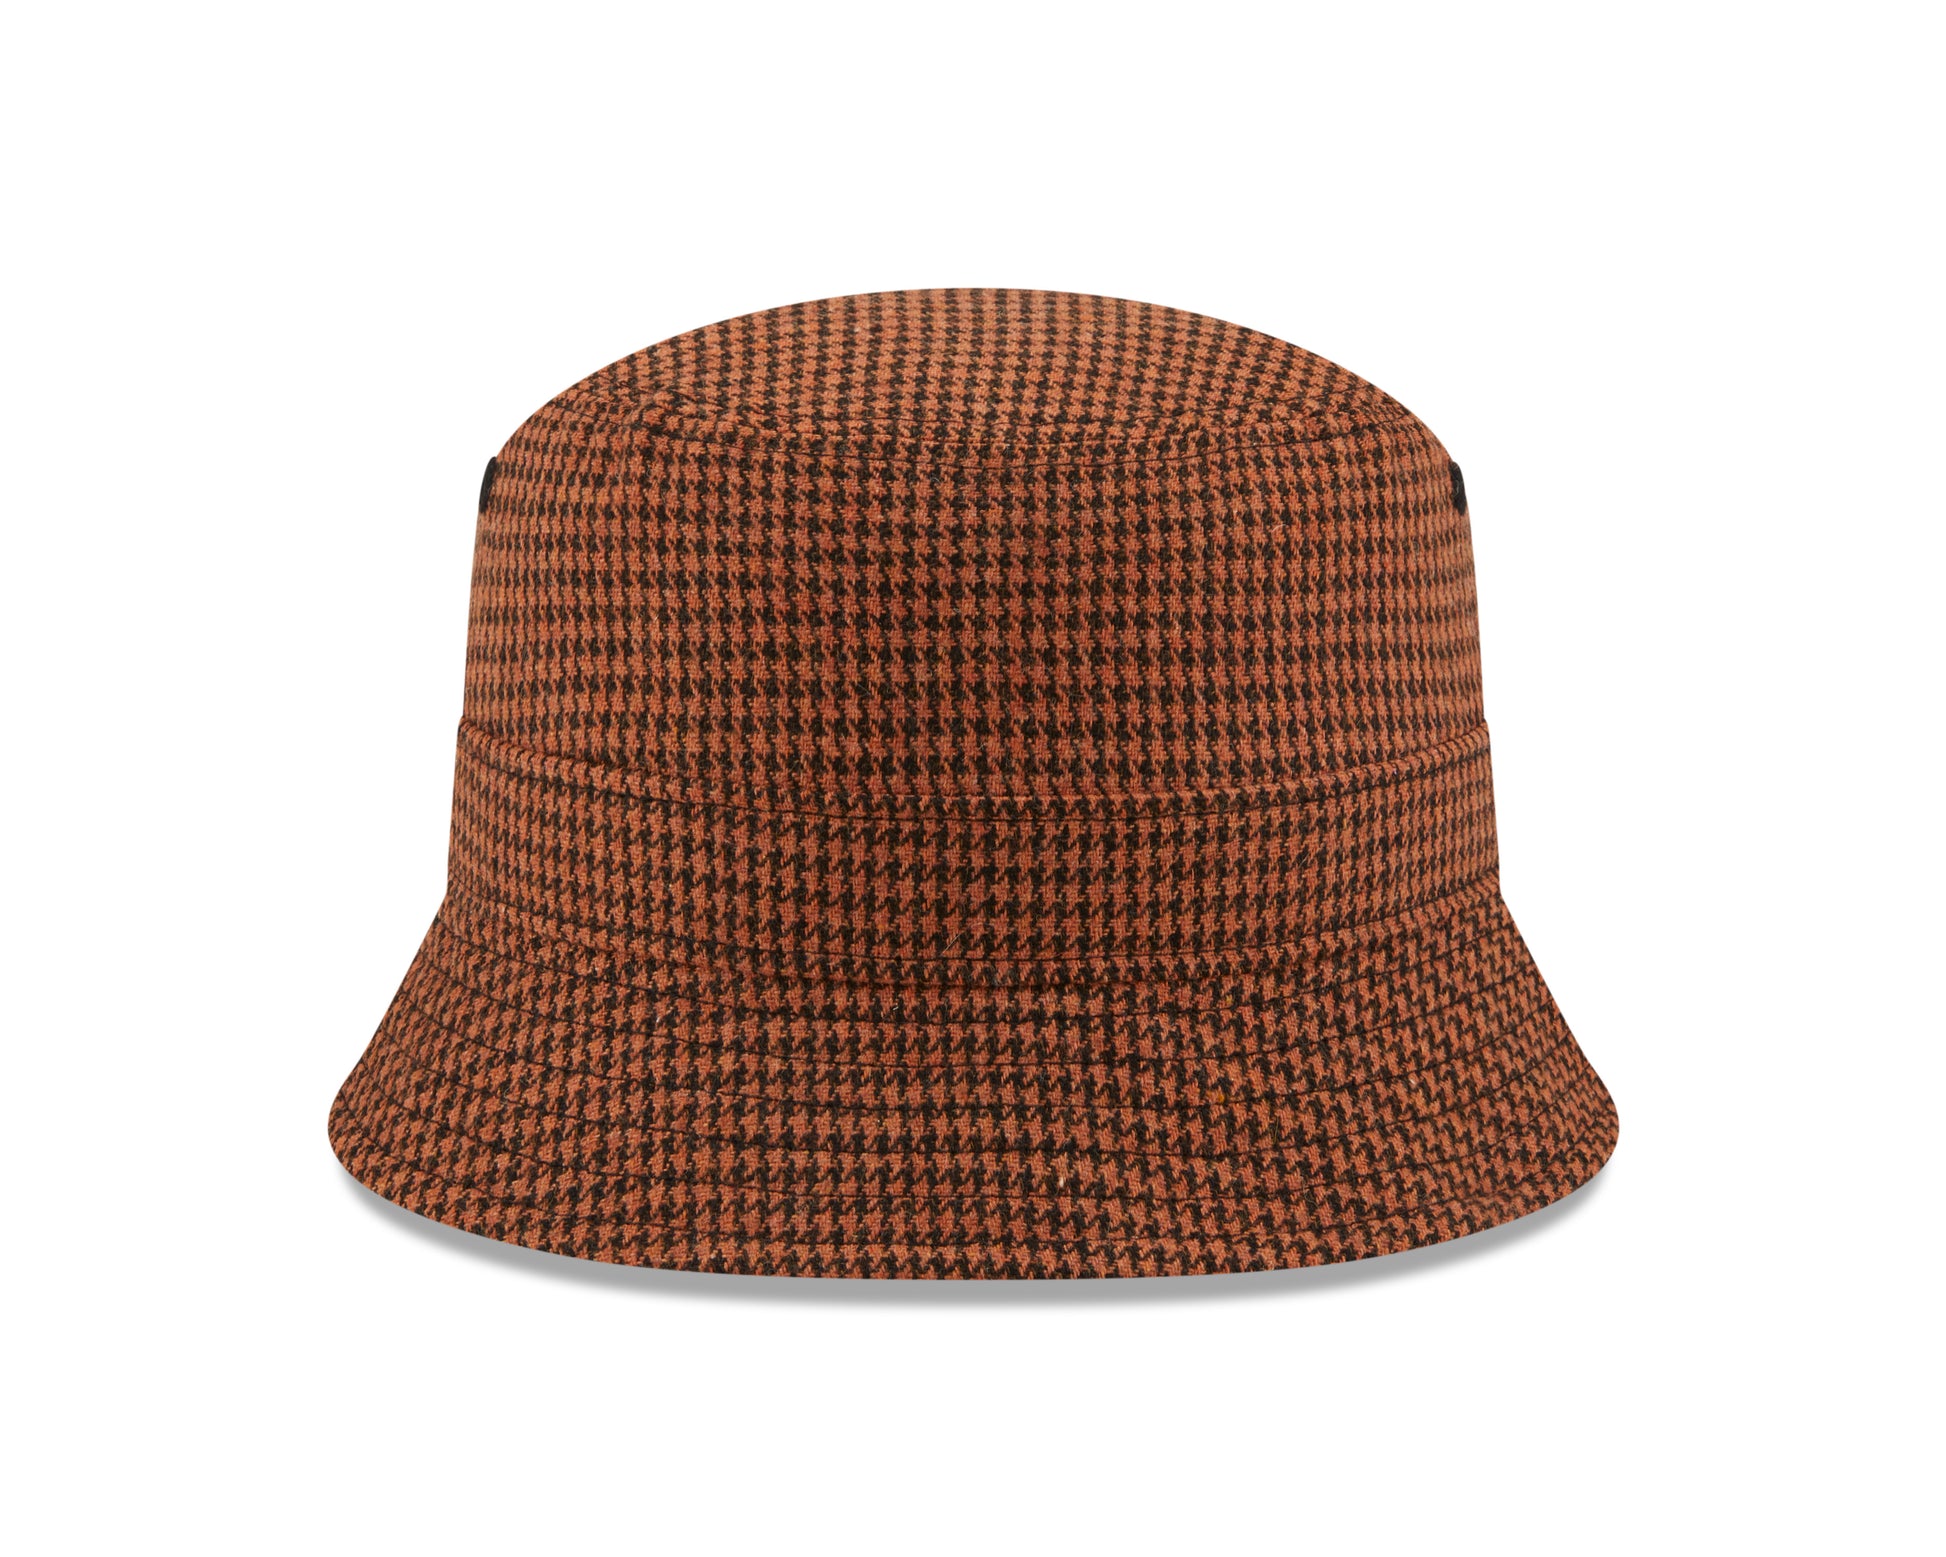 New Era Bucket Hat Houndstooth - Brun - Headz Up 